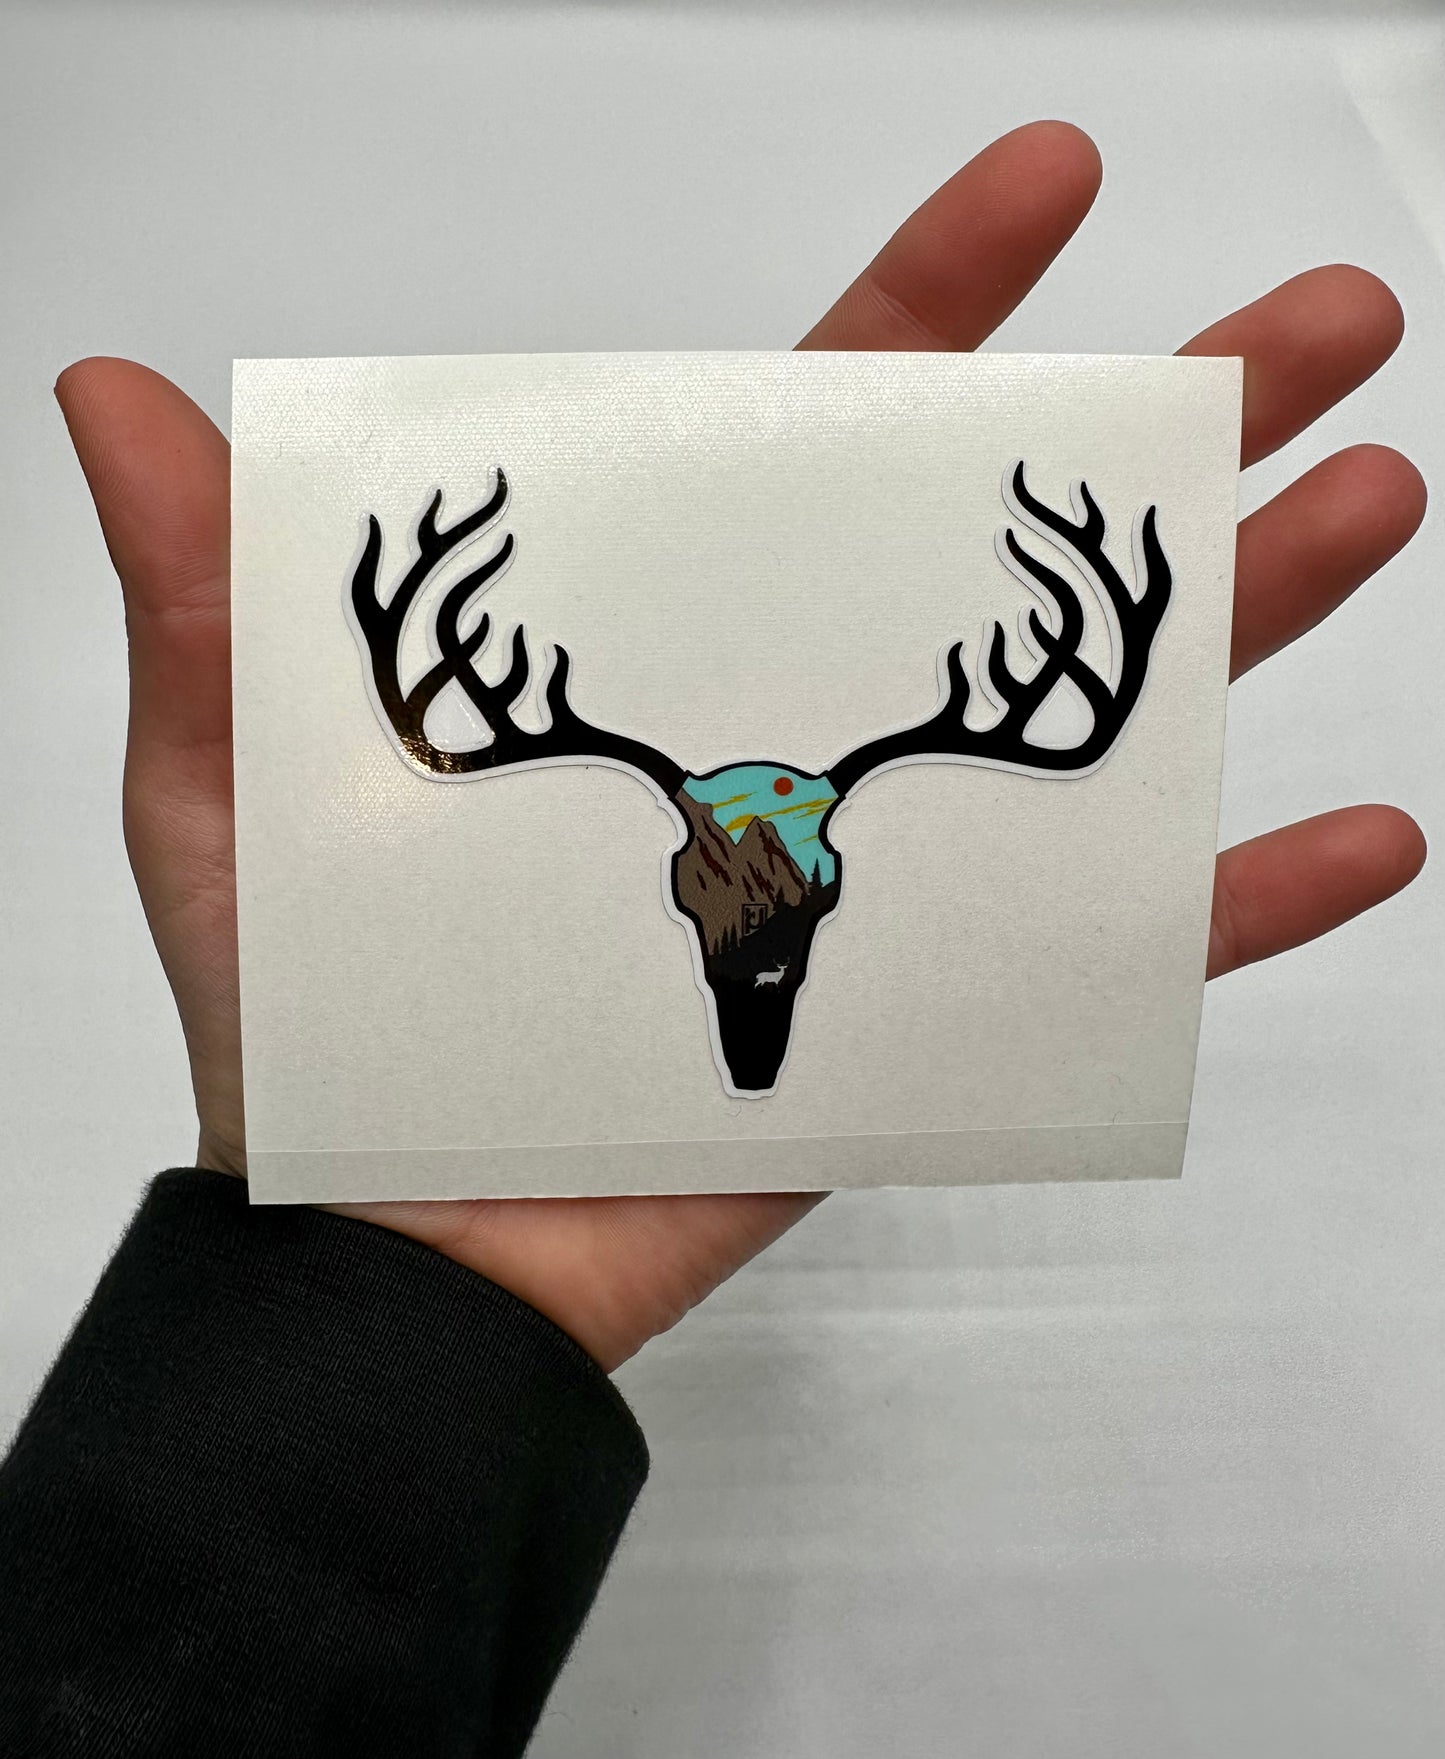 Deer Skull Sticker